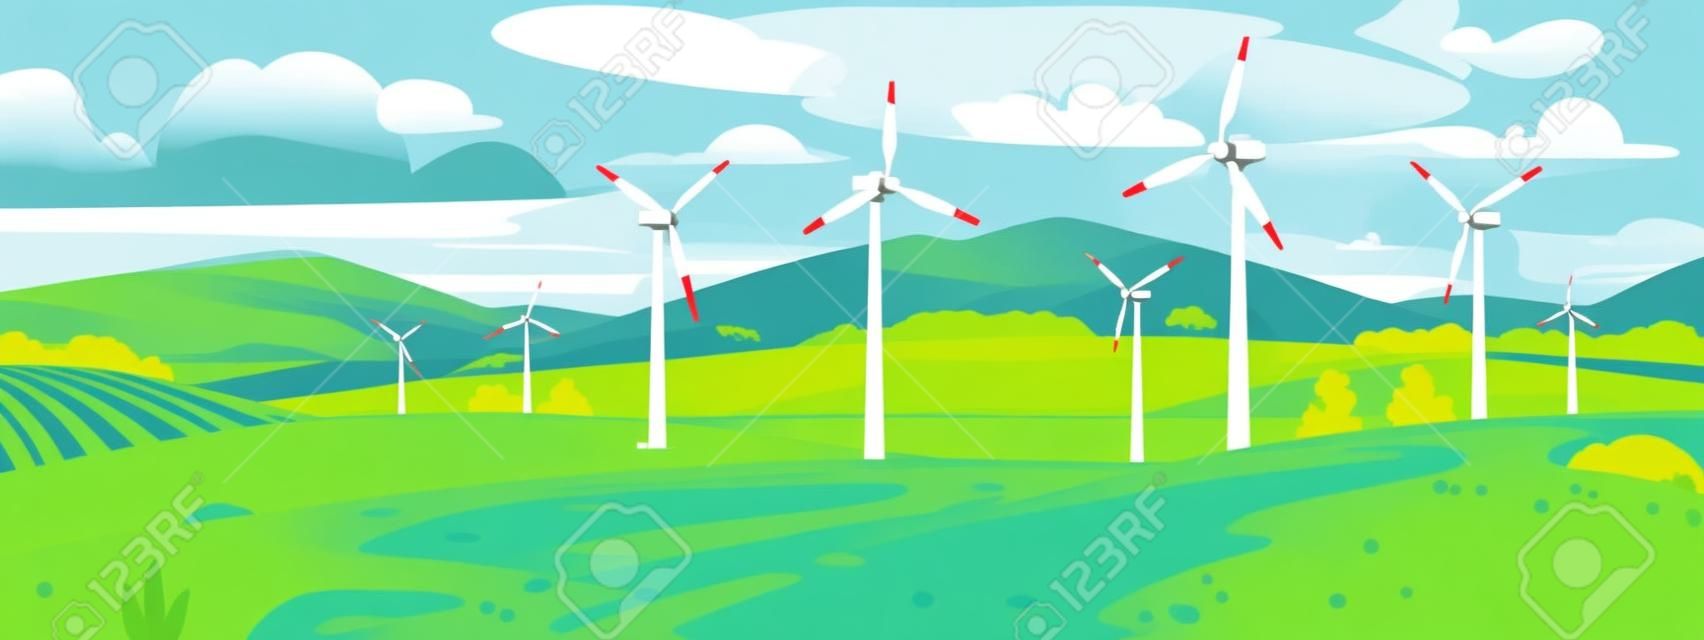 Farma wiatrowa lub elektrownia na polu w pobliżu jeziora i gór latem. turbiny wiatrowe elektrowni wytwarzają przyjazną dla środowiska i zrównoważoną energię elektryczną. ilustracja kreskówka styl wektor.